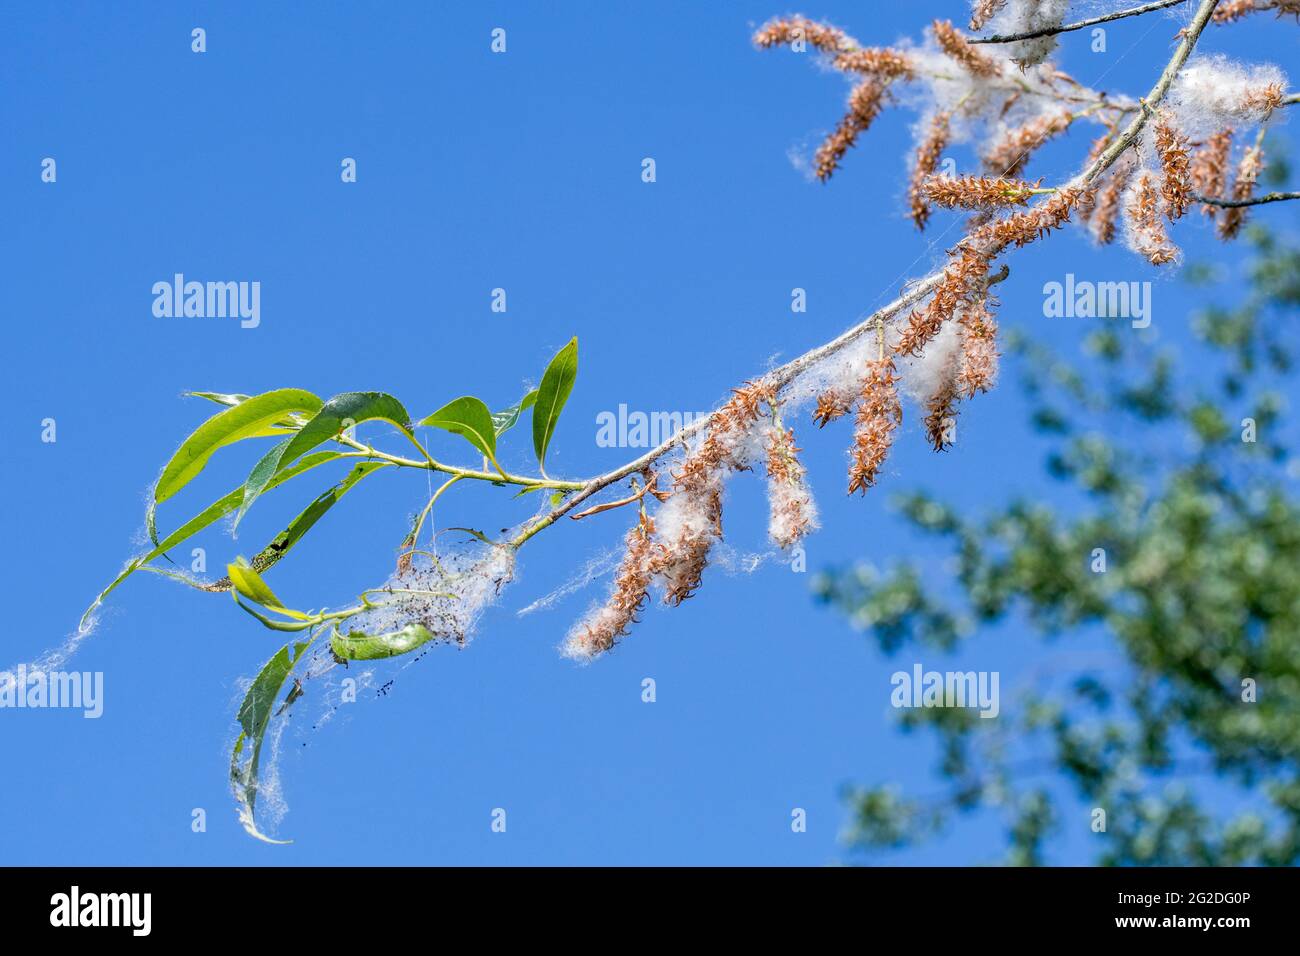 Weiße Weide (Salix alba) mit Blättern und weiblichen Kätzchen, die Samen hervorbringen, die im Frühjahr in weiße Daunen/Flusen eingebettet sind Stockfoto